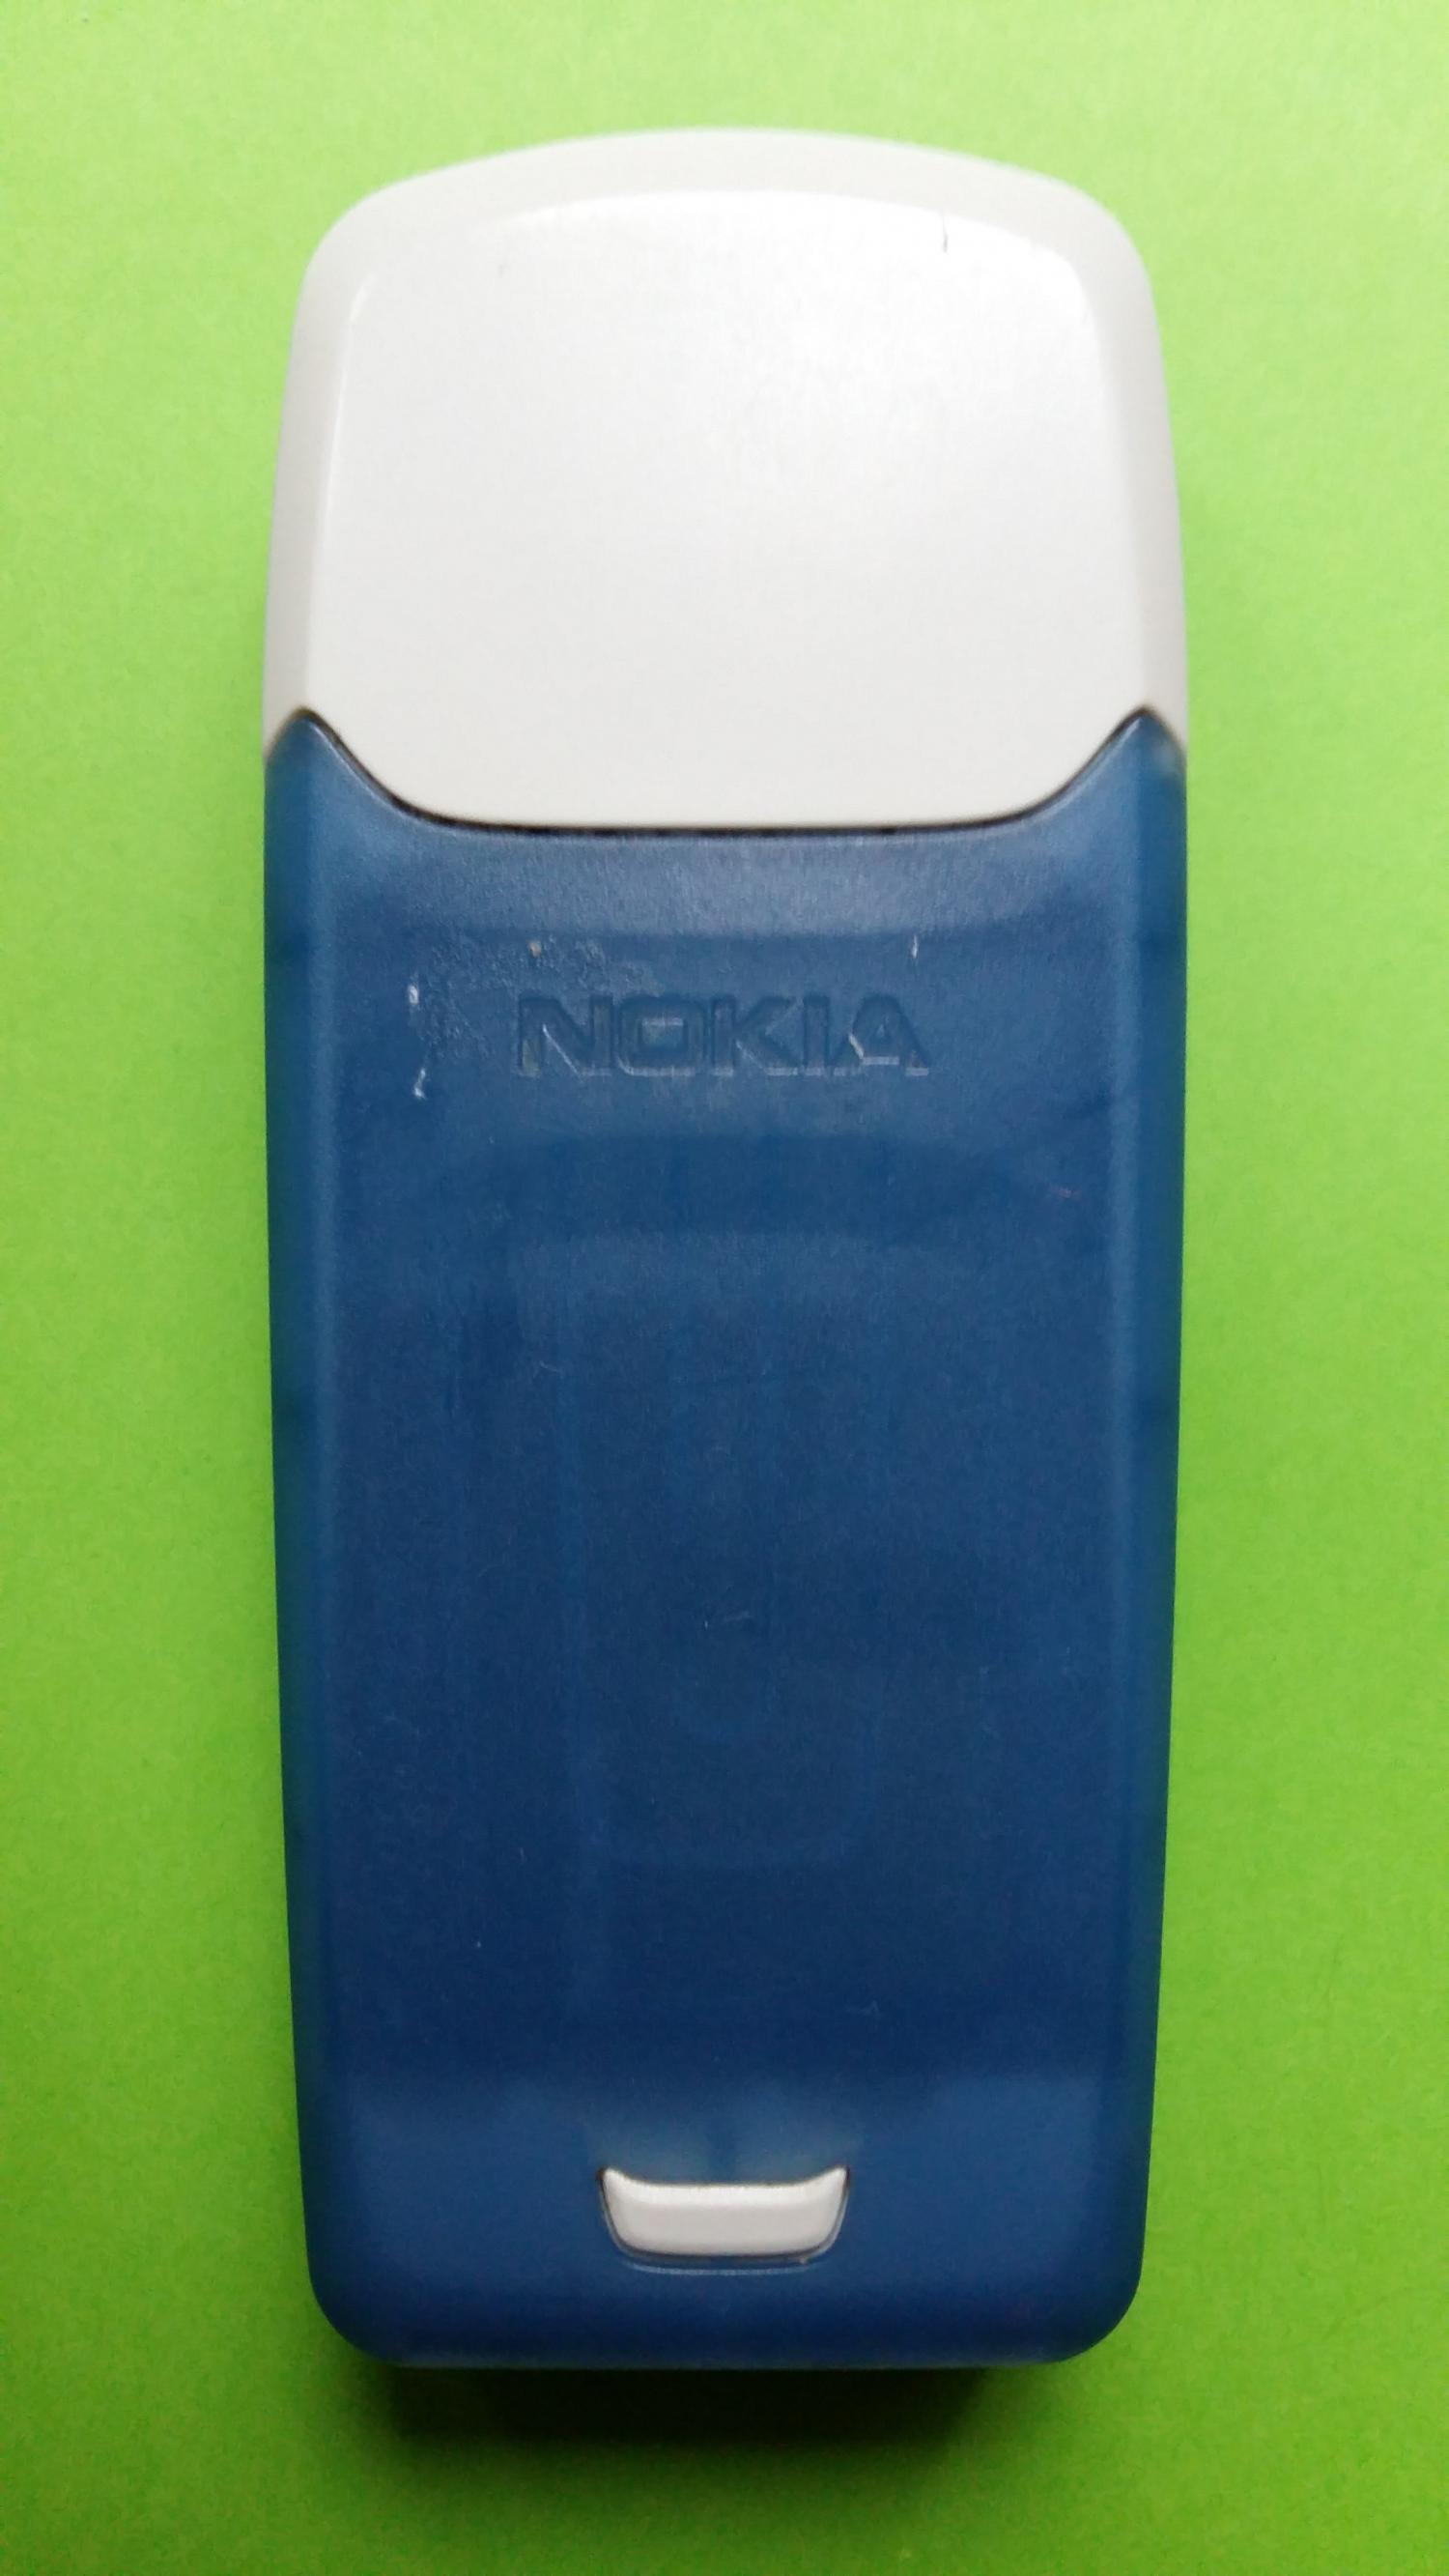 image-7321150-Nokia 3100 (7)2.jpg